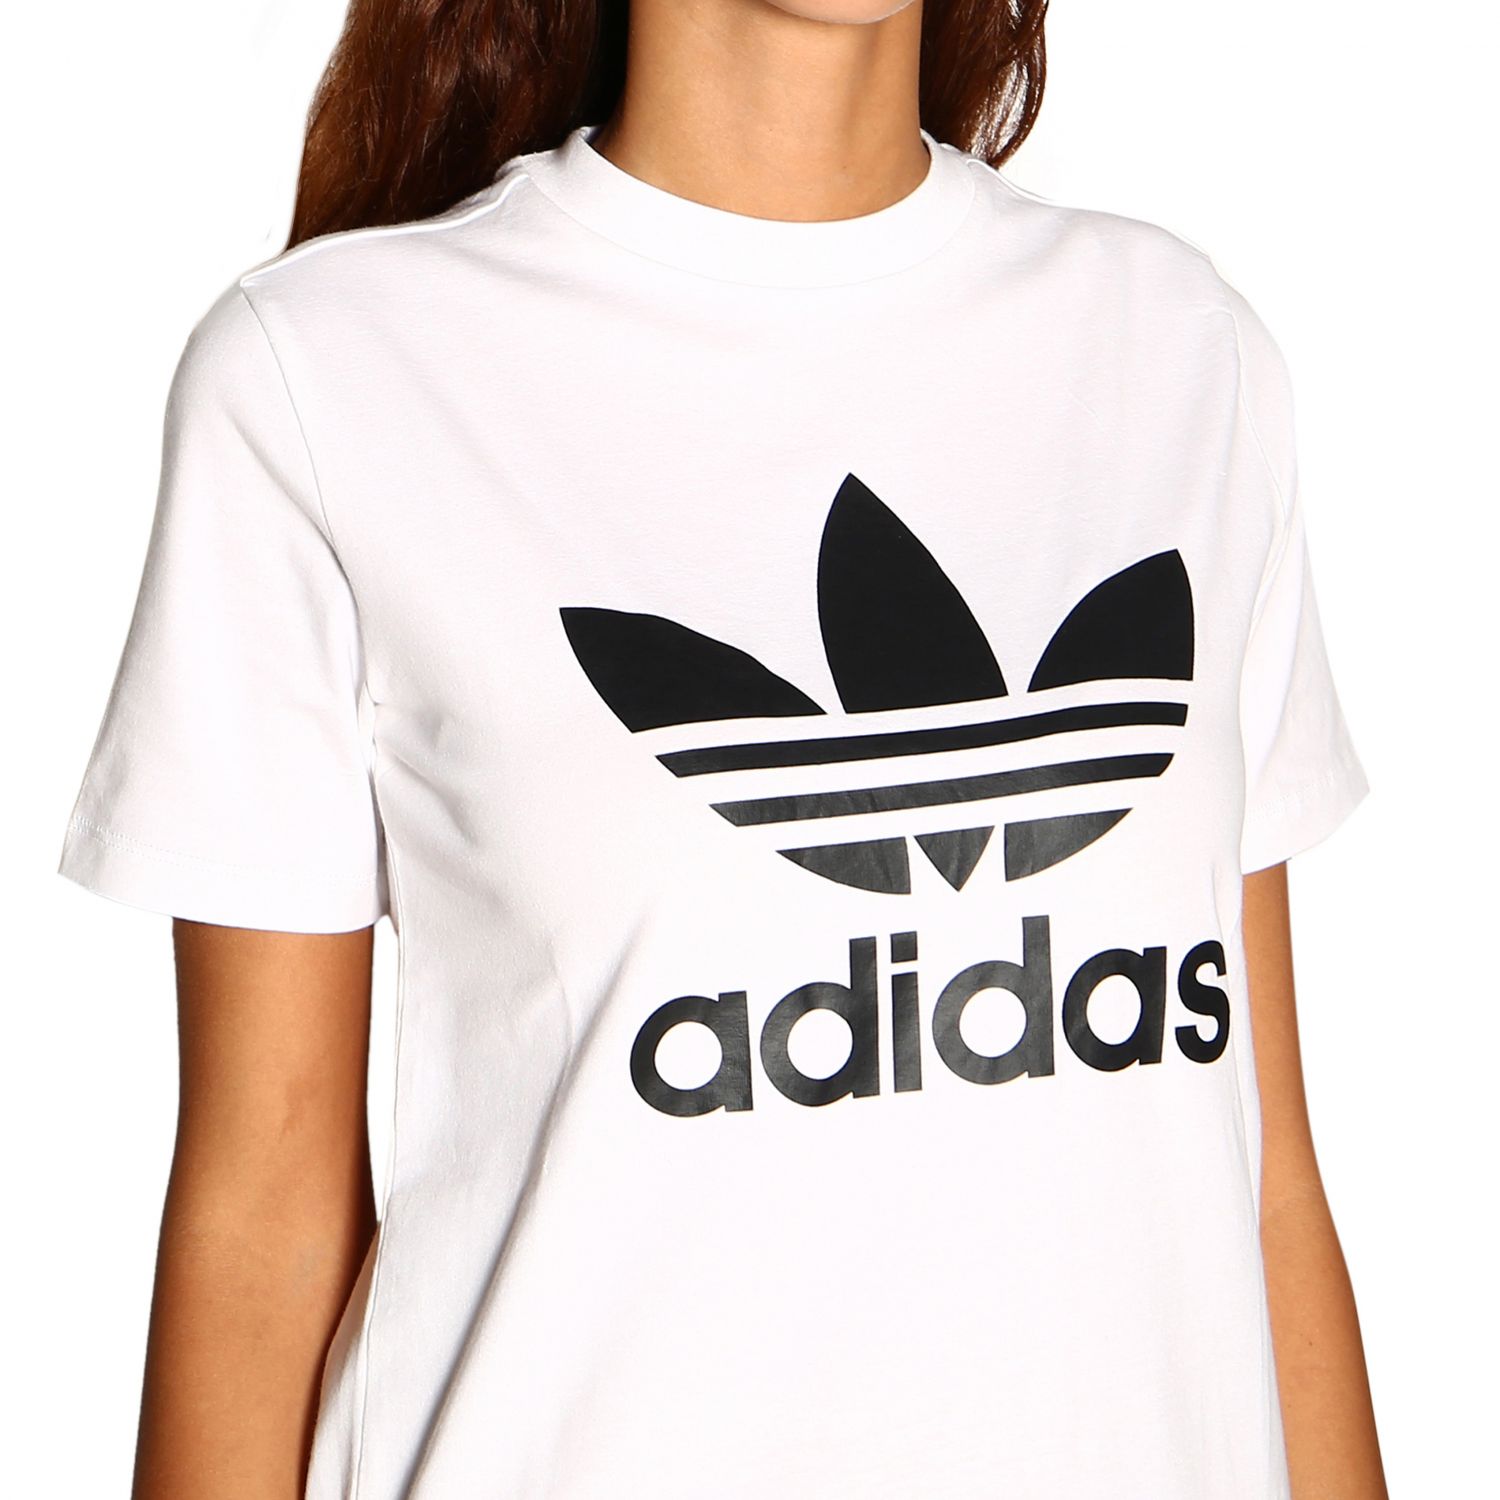 Adidas Originals Outlet: t-shirt for women - White | Adidas Originals t ...